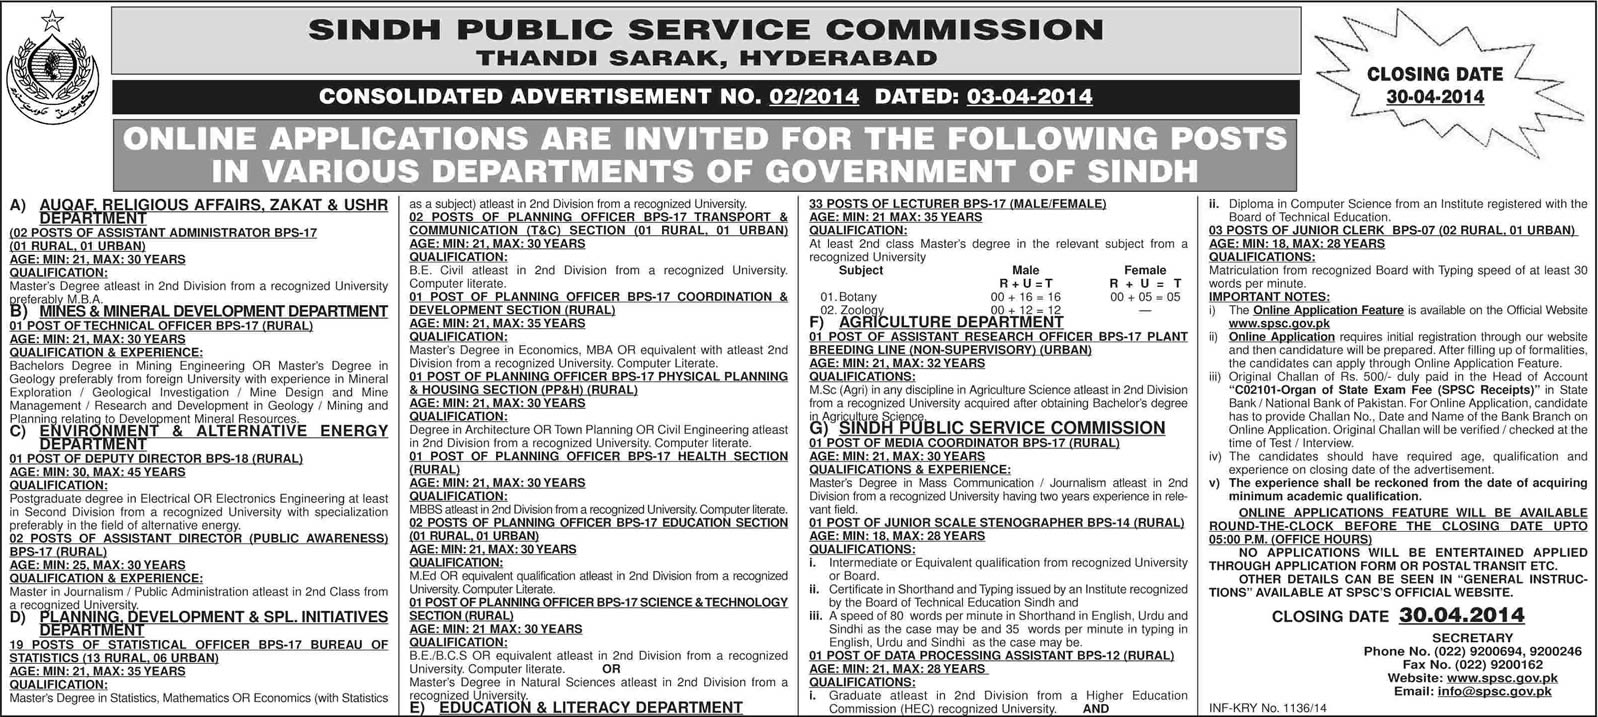 Sindh Public Service Commission Jobs 2014 April Latest